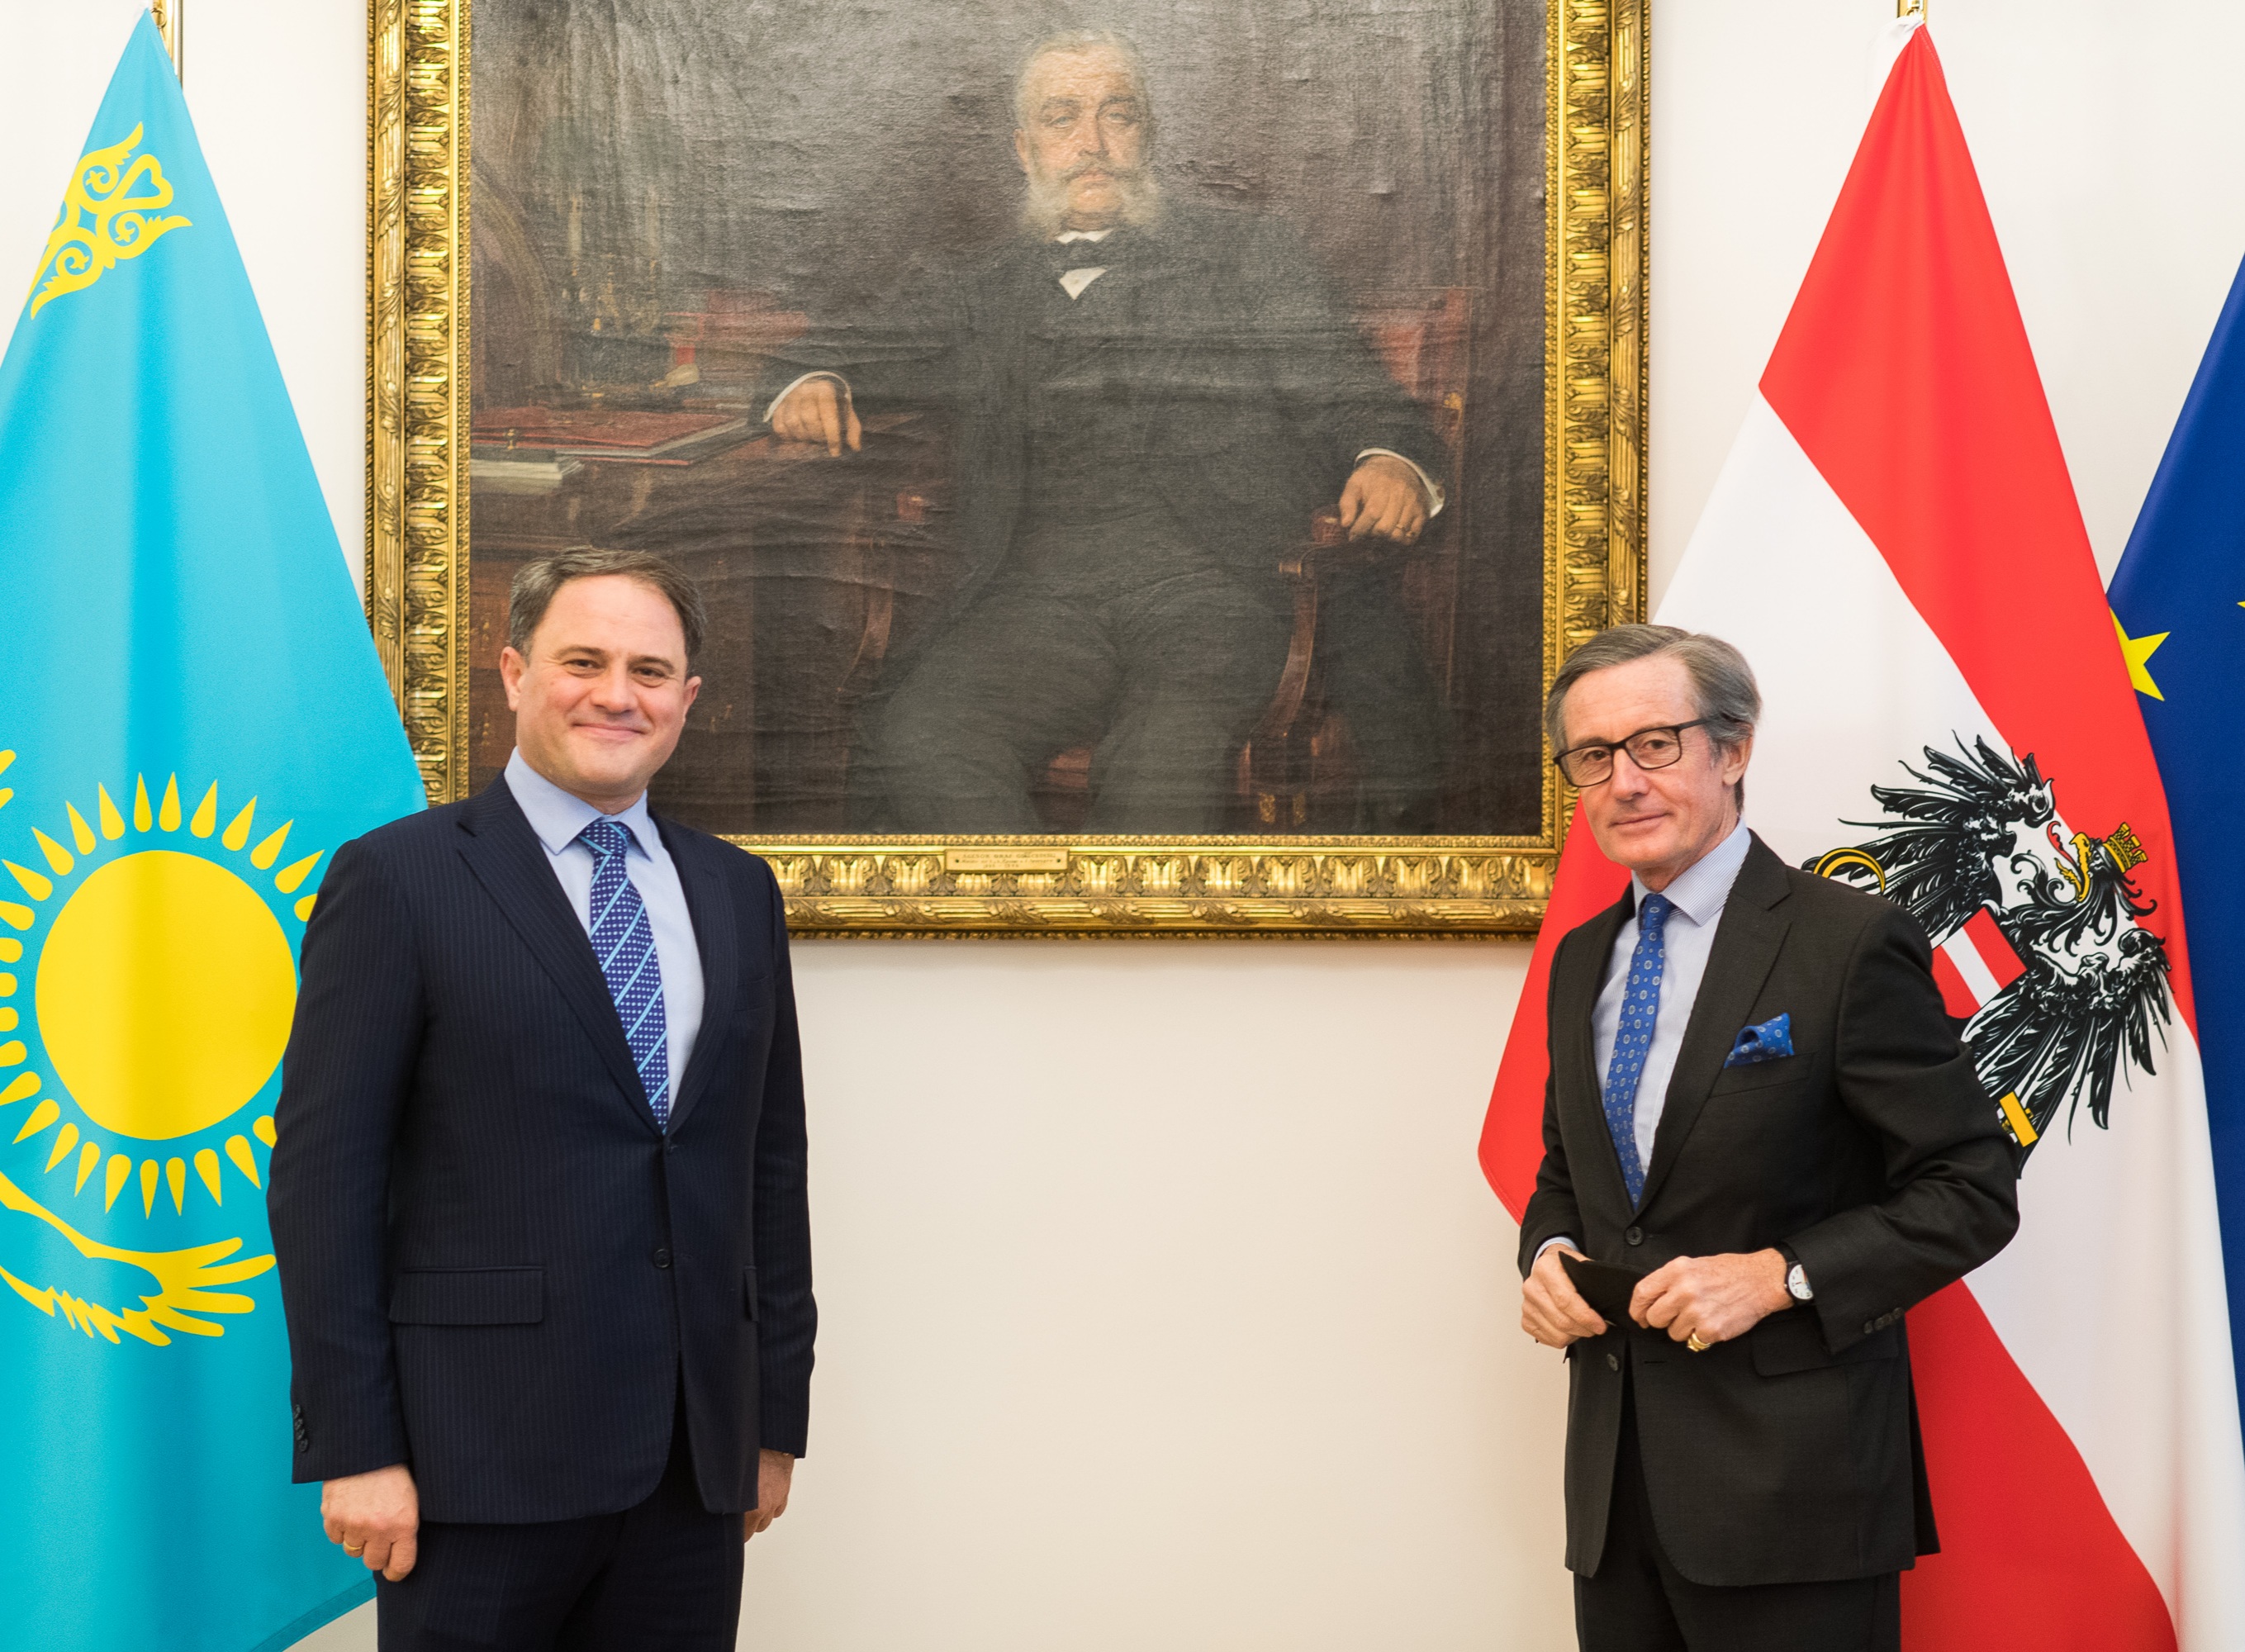 Визит заместителя министра иностранных дел РК в Вену позволил укрепить и расширить отношения с Австрией и ОБСЕ